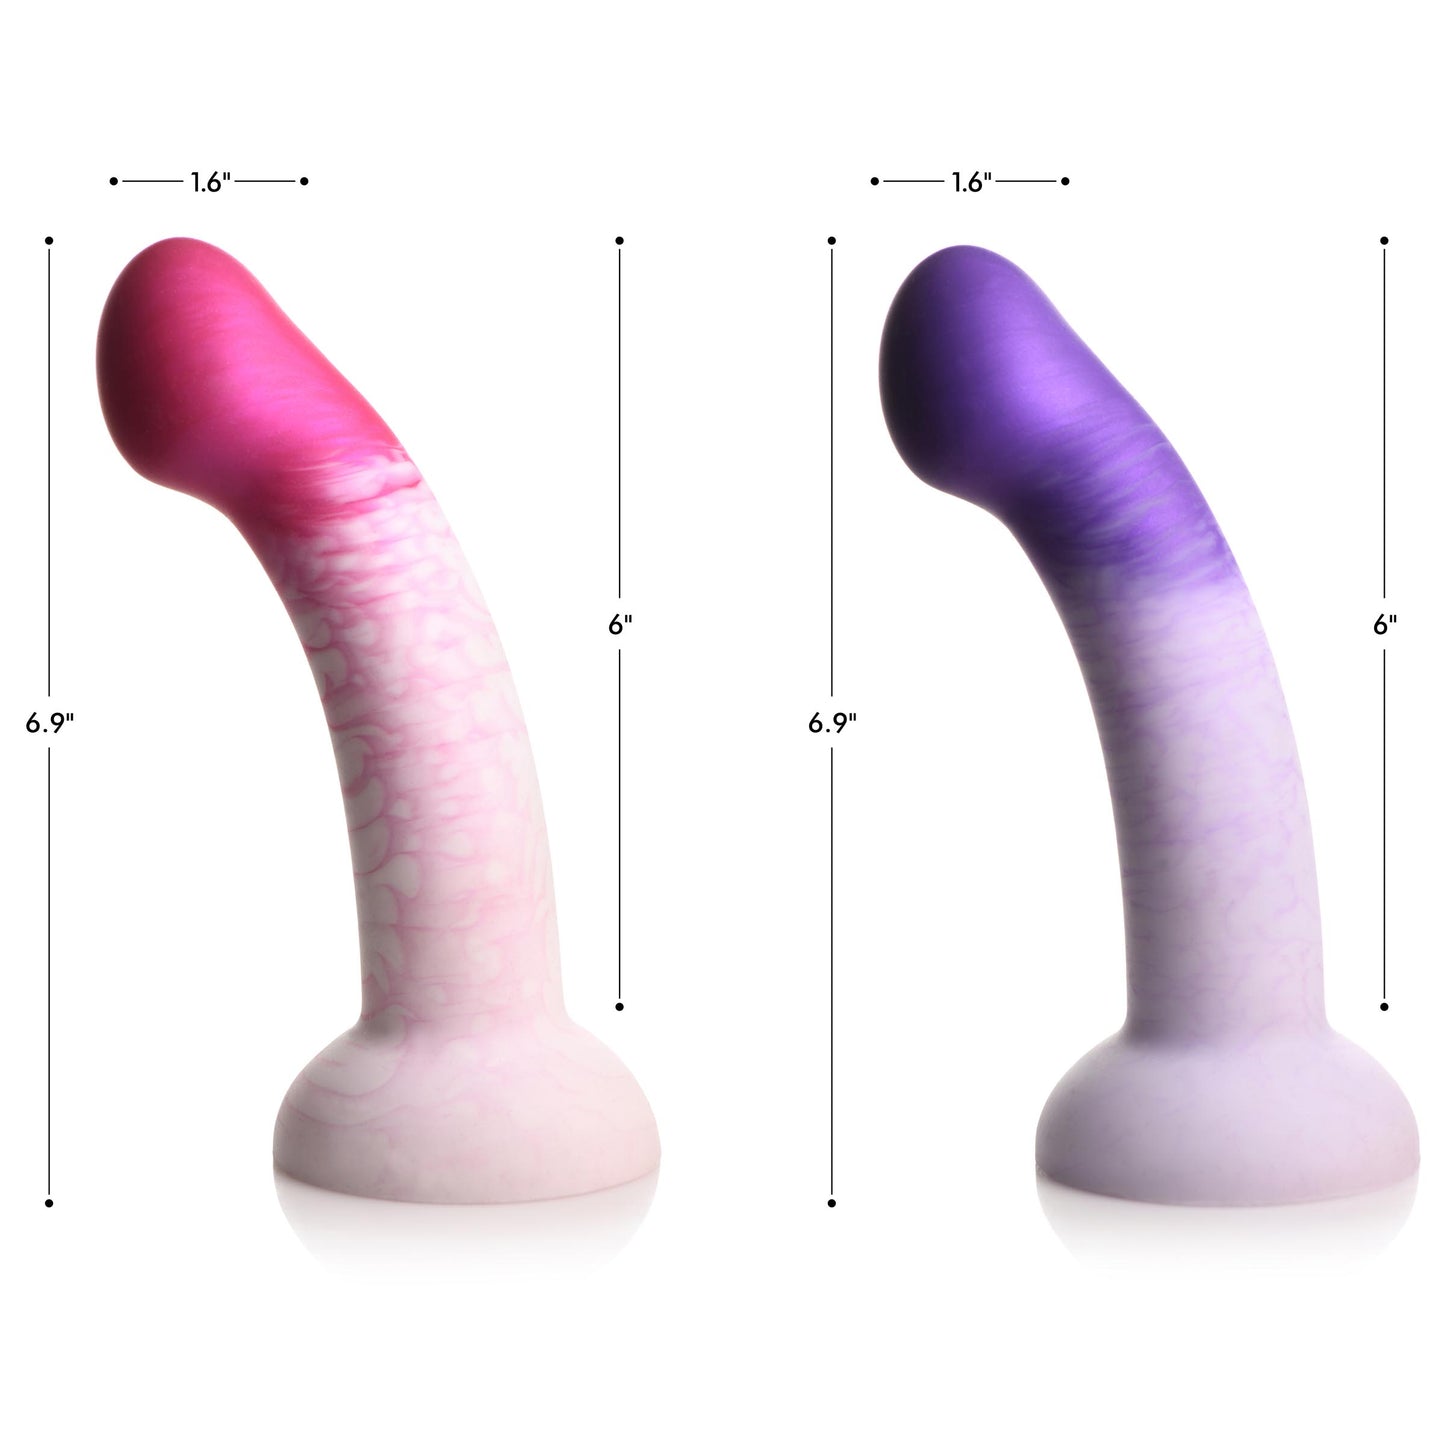 G-swirl G-spot Silicone Dildo - Purple